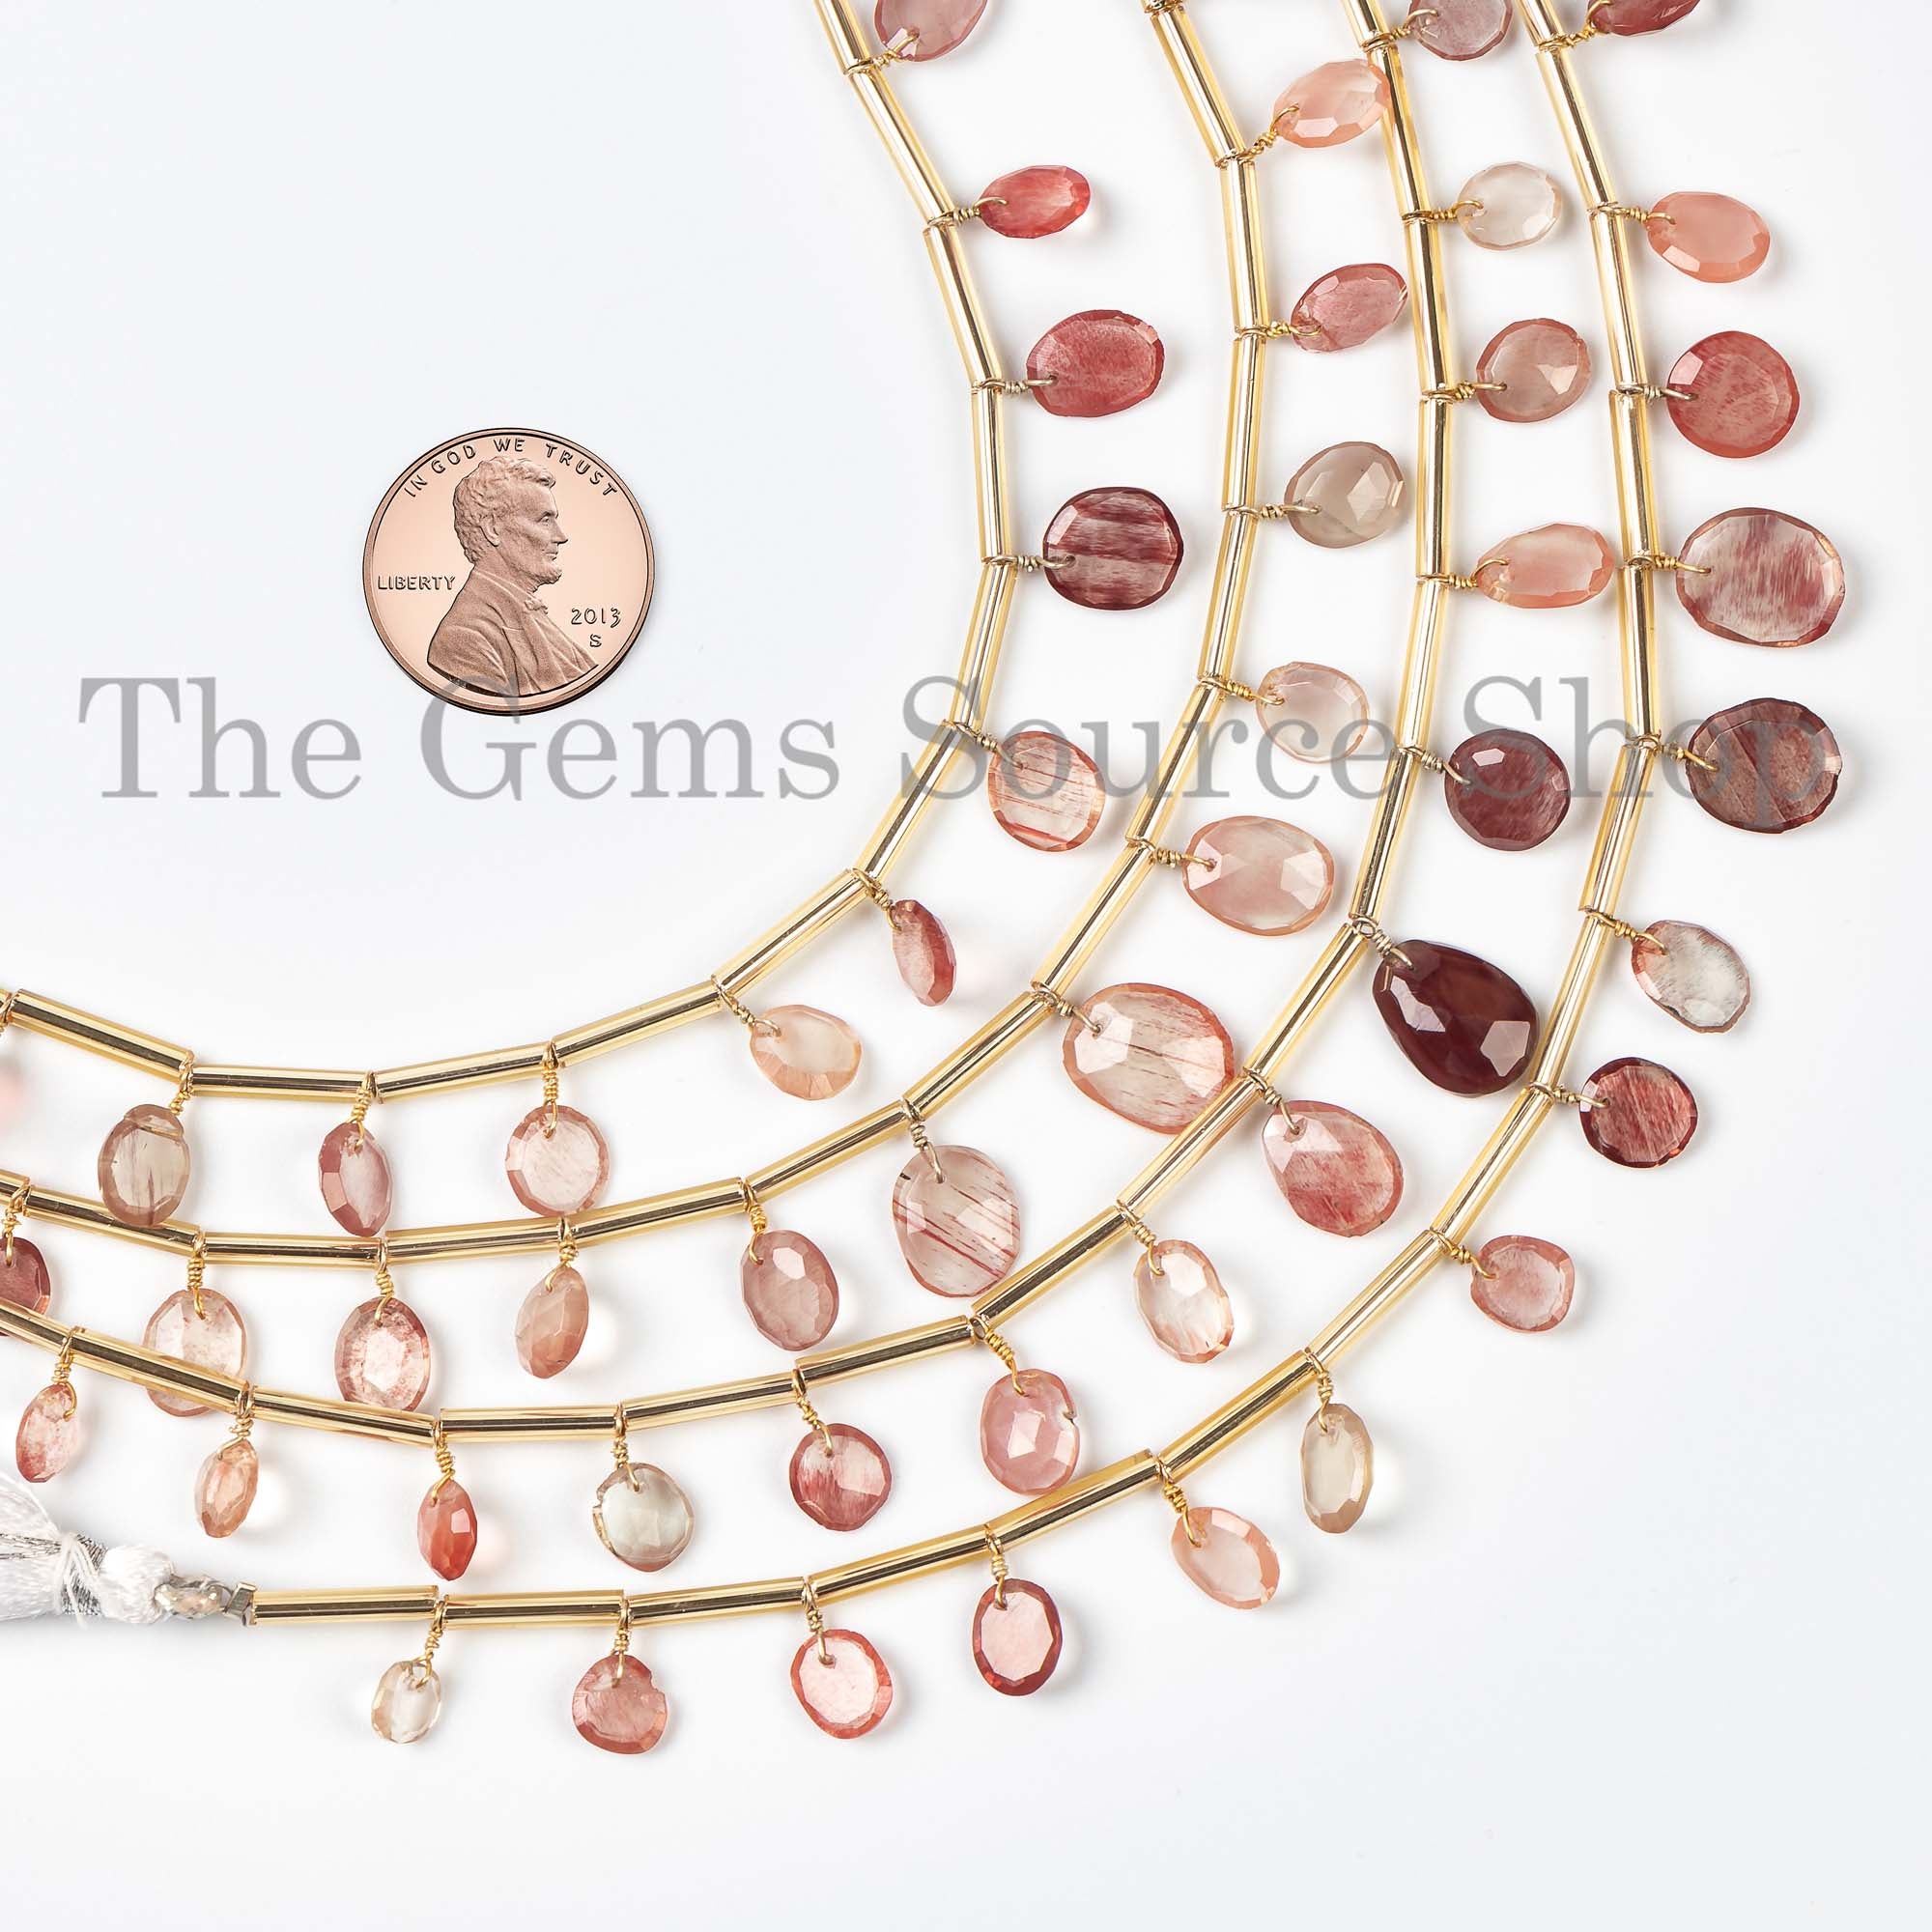 Andesine Labradorite Briolette, Labradorite Rose Cut Beads, Labradorite Front To Back Beads, Labradorite Beads, Labradorite Face Drill Beads